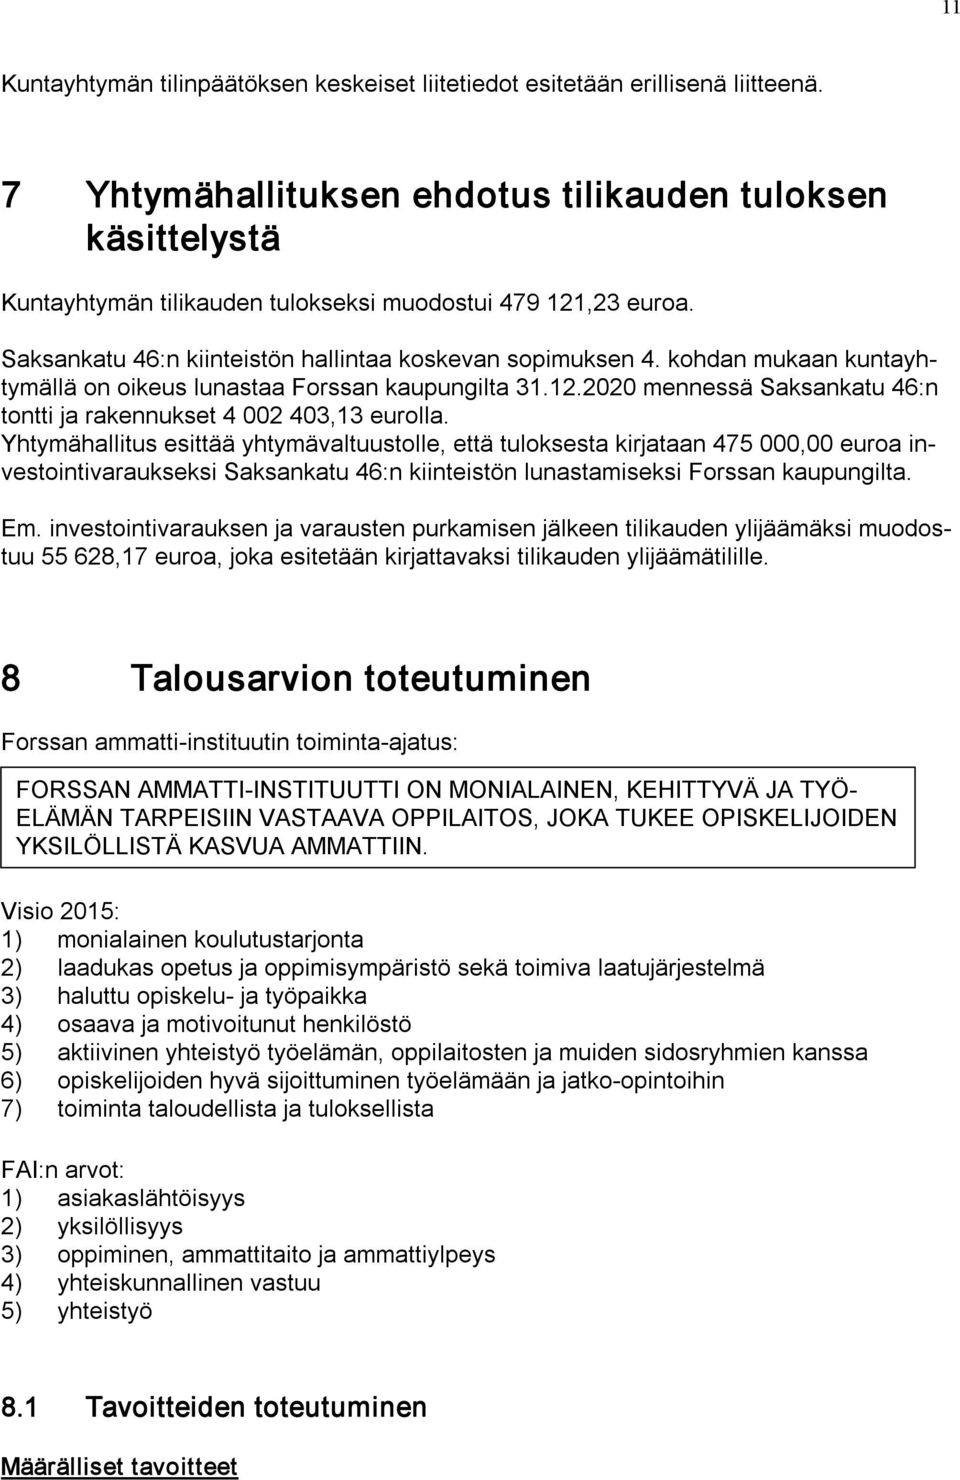 kohdan mukaan kuntayhtymällä on oikeus lunastaa Forssan kaupungilta 31.12.2020 mennessä Saksankatu 46:n tontti ja rakennukset 4 002 403,13 eurolla.